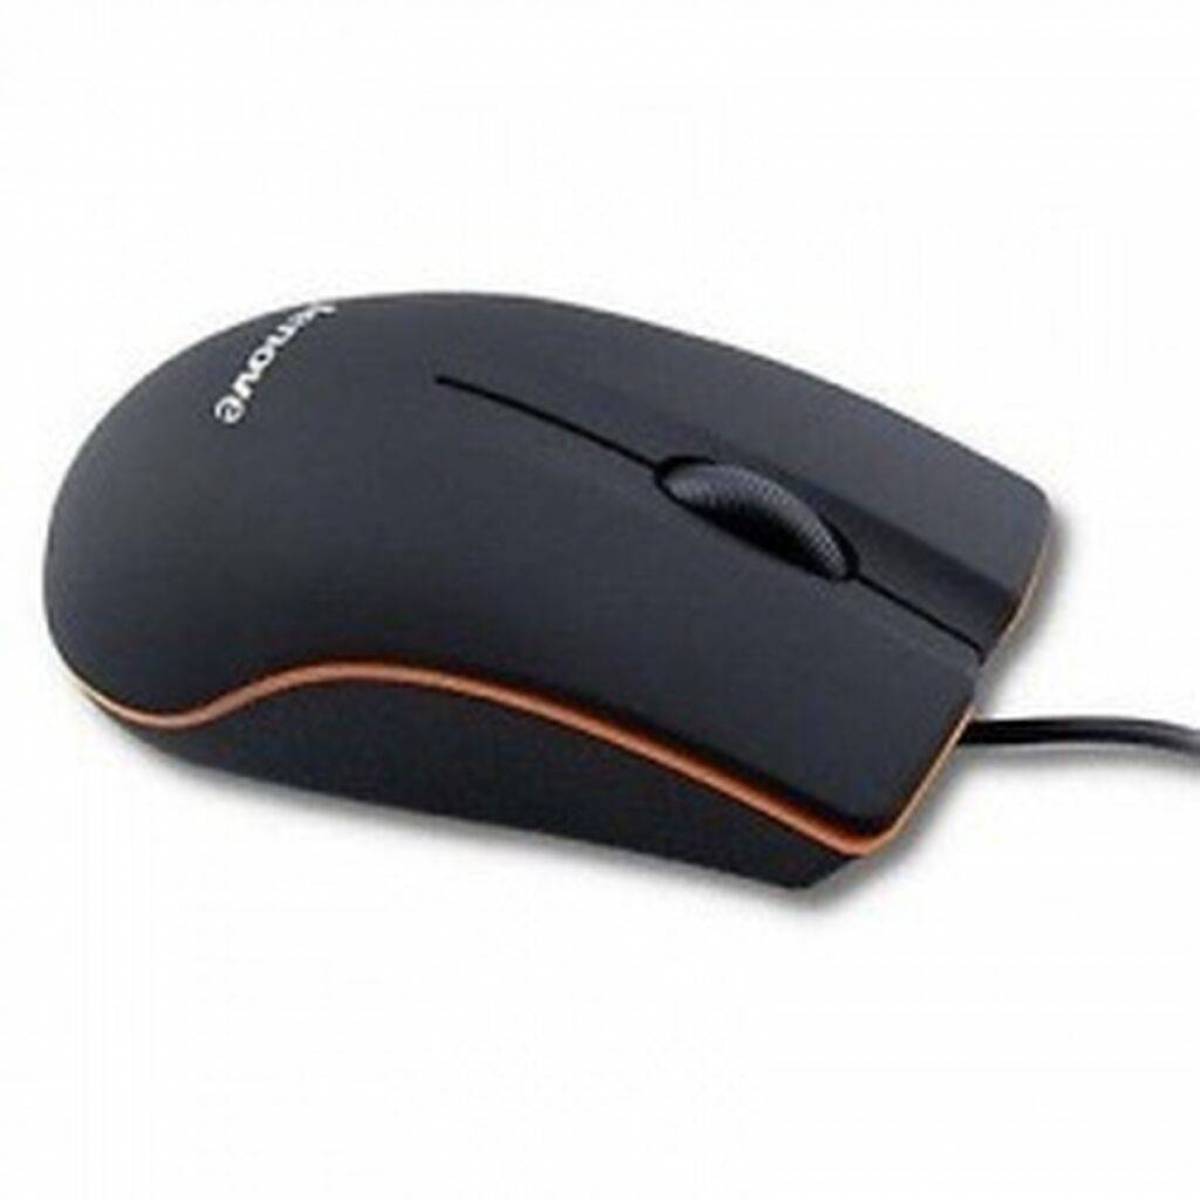 Мыши недорого. MRM Power 6d Optical Mouse. Lenovo m120 Pro мышь. Faison мышь проводная m9. Компьютерная мышь 3d Optical Mouse.